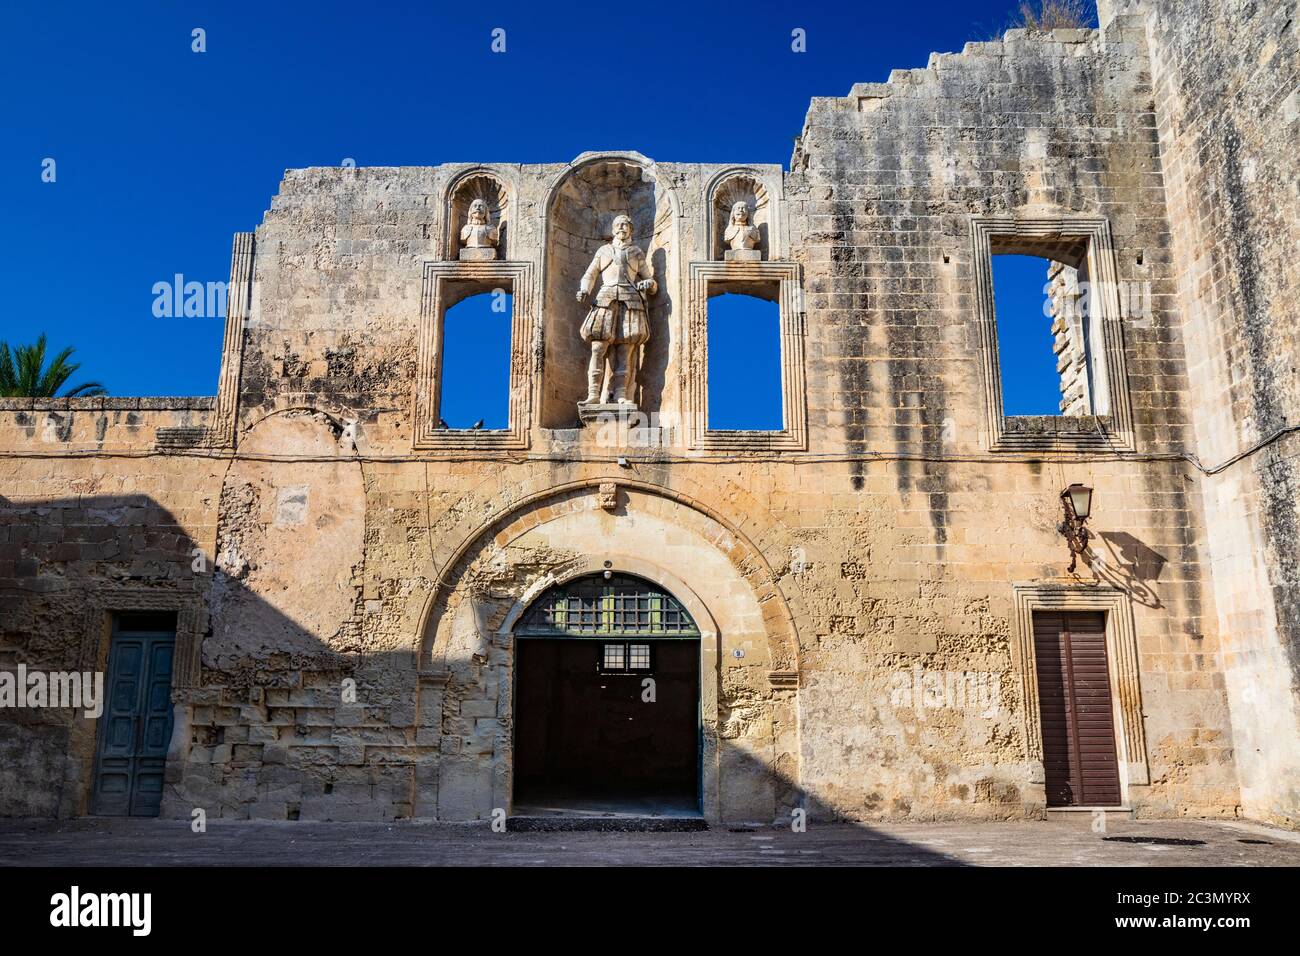 La cour du château, ou palais ducal, du Castromediano Lymburgh, à Cavallino, Lecce, Puglia, Salento, Italie. Fenêtres et niches vides avec Banque D'Images